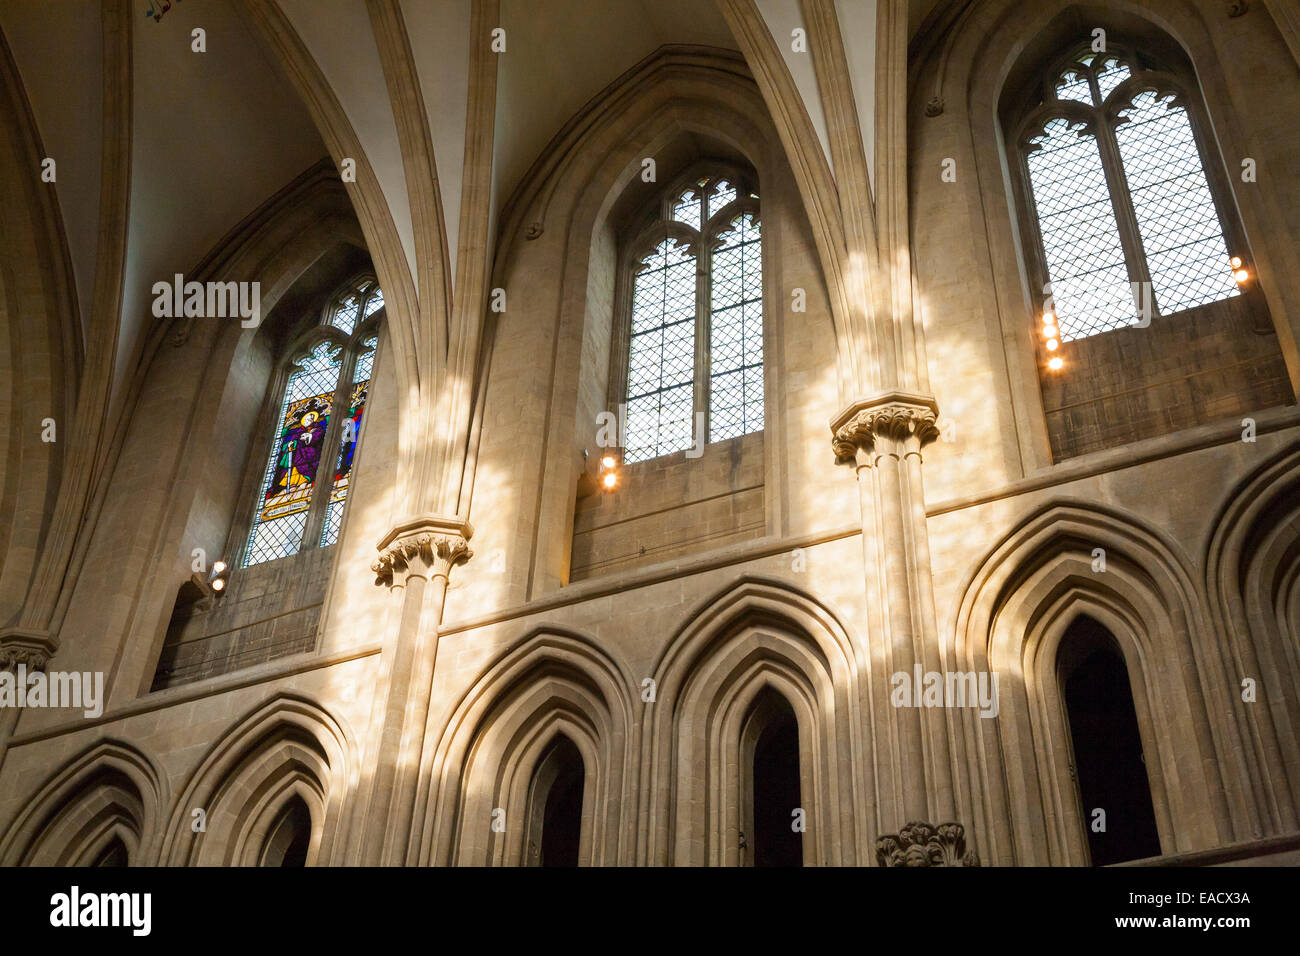 Bogen / Bogen Rundbogenfenster im Kirchenschiff / nachschlagen, das Gewölbe des Kirchenschiffs der Wells Cathedral (Gewölbedecke). Somerset UK. Stockfoto